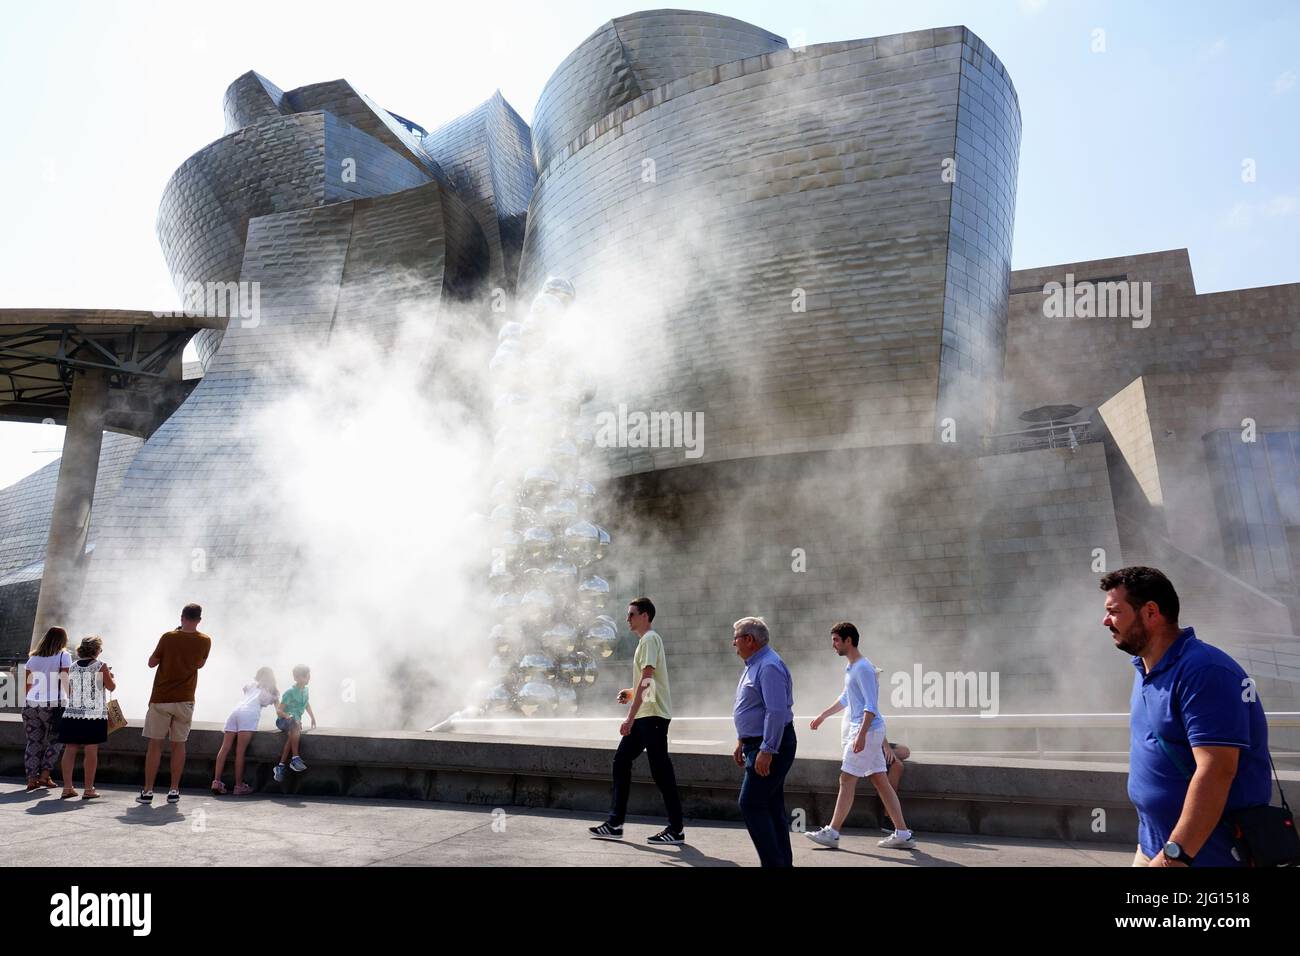 Das Guggenheim Museum für moderne und zeitgenössische Kunst wurde vom Architekten Frank Gehry entworfen. Bilbao, Spanien - August 2018 Stockfoto